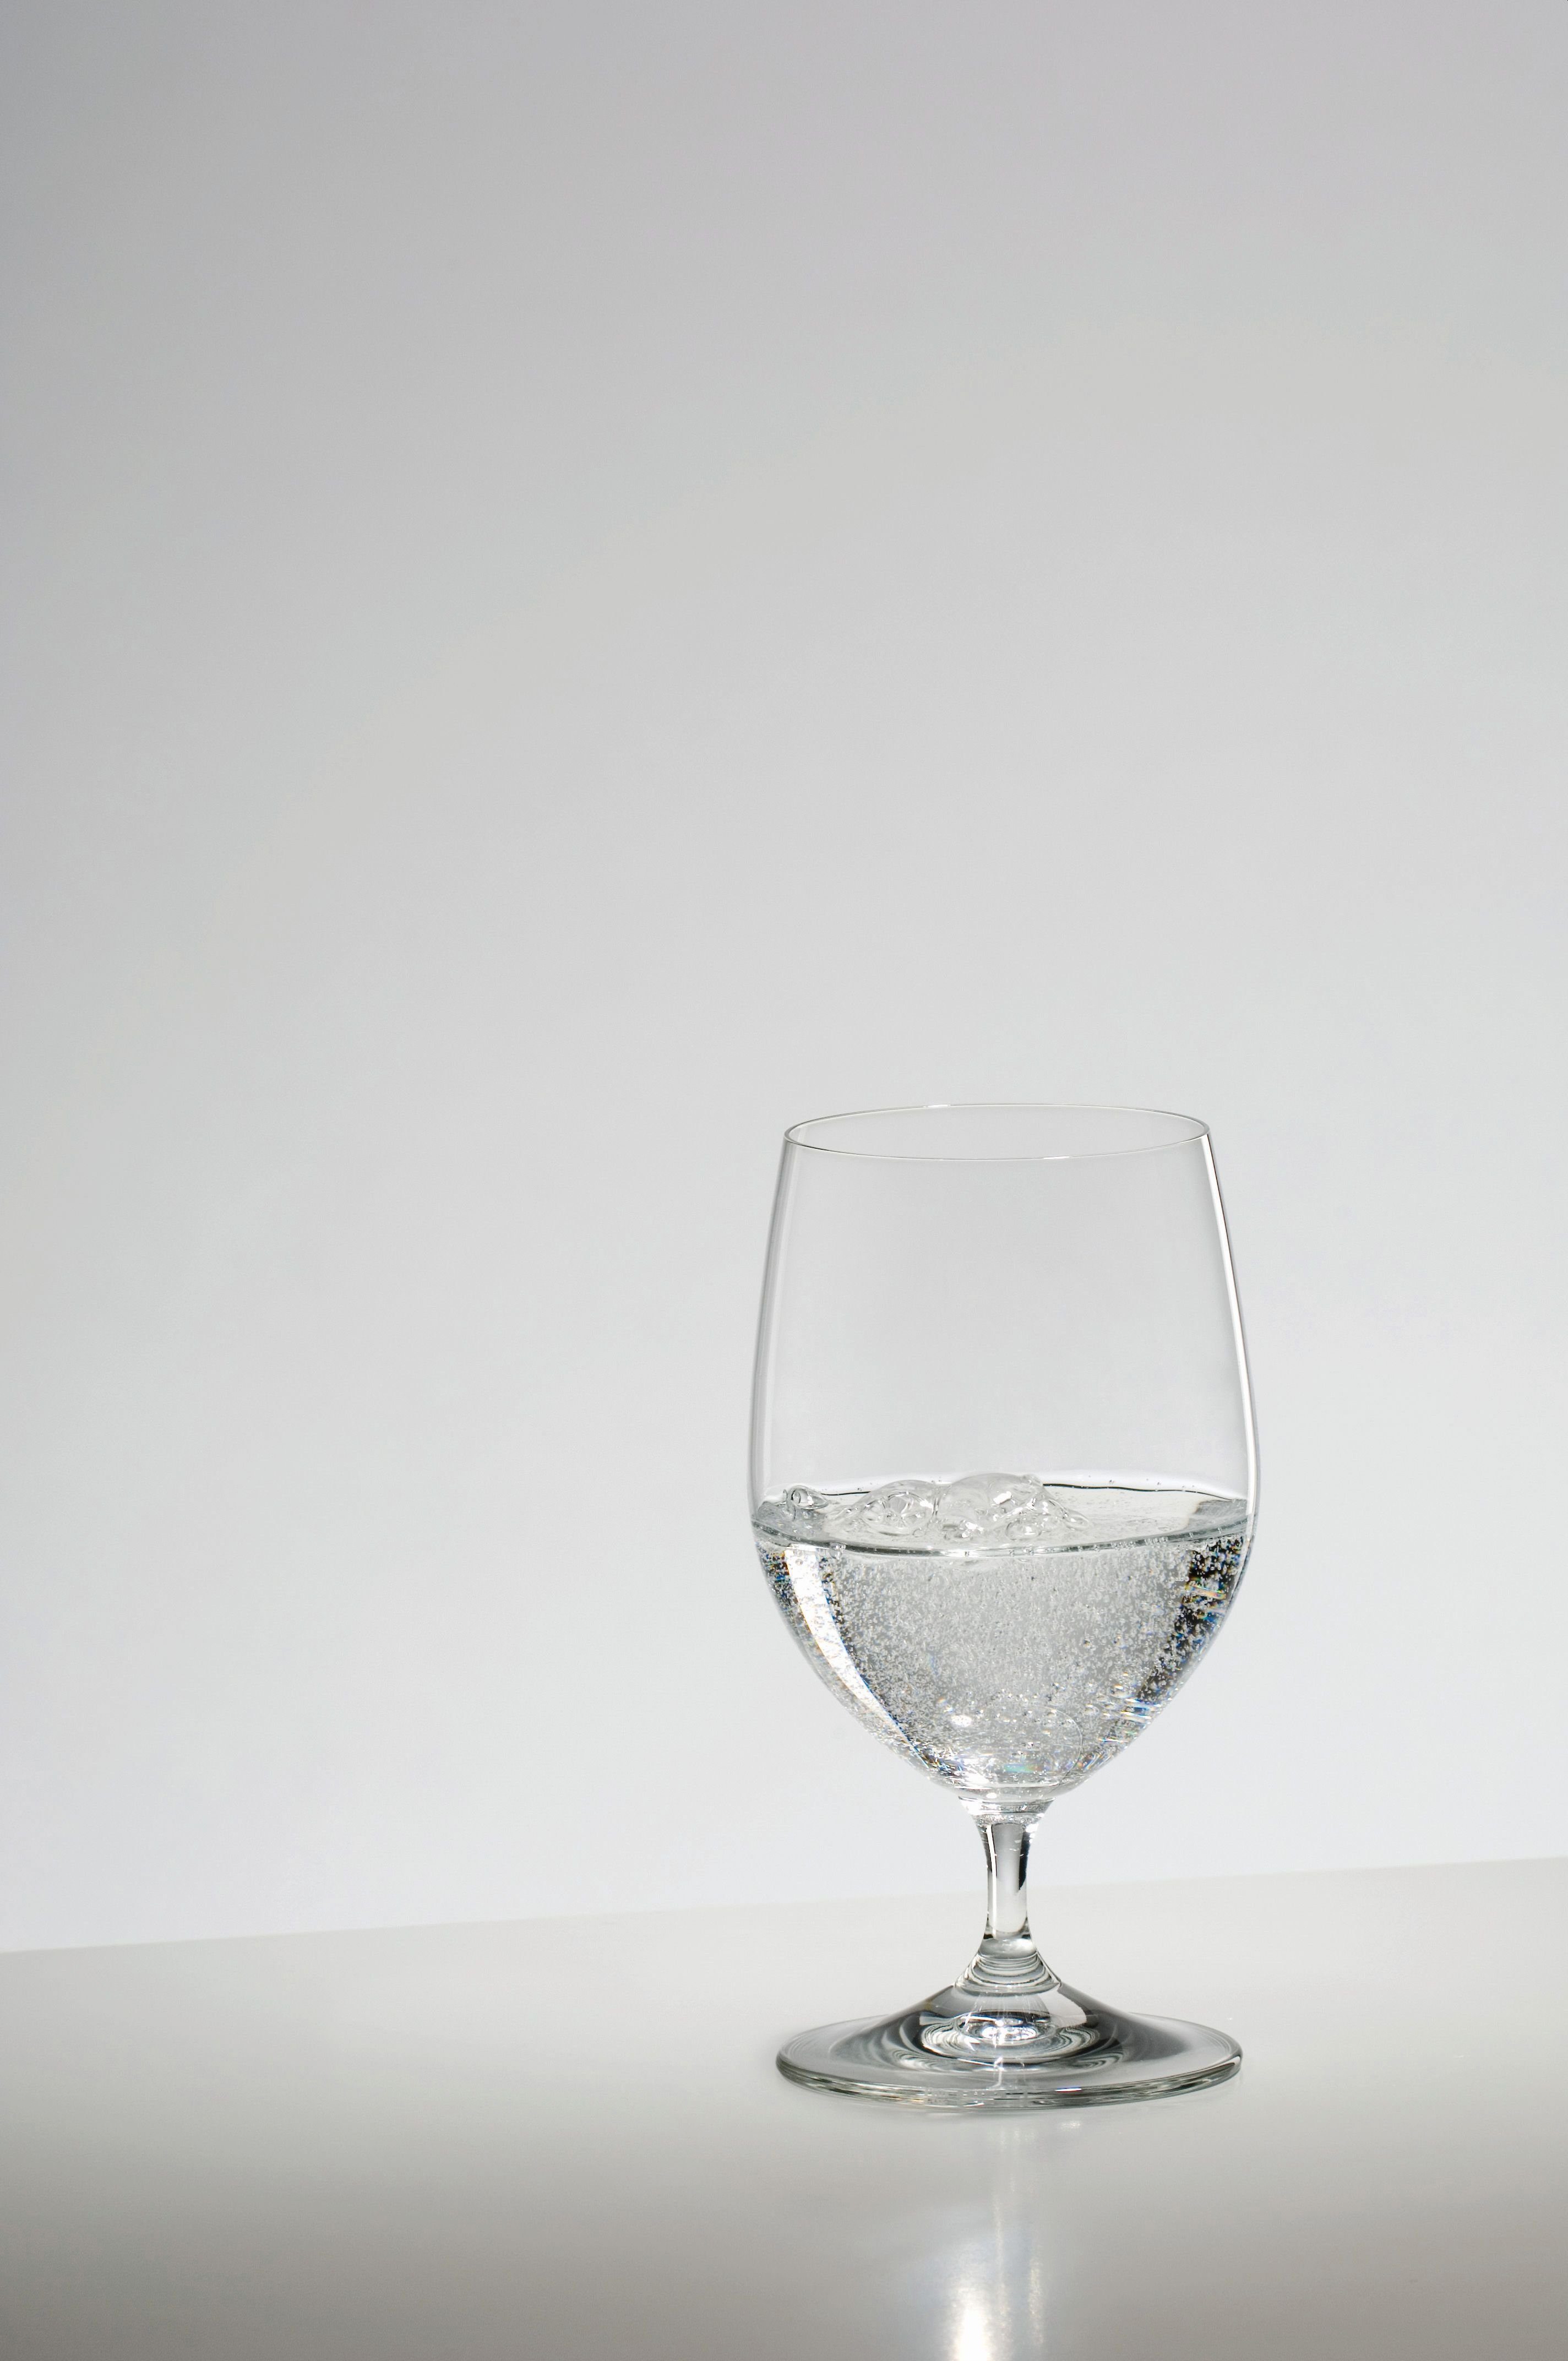 RIEDEL THE WINE GLASS COMPANY Glas Riedel Vinum 6416/02 Wasserglas, Glas